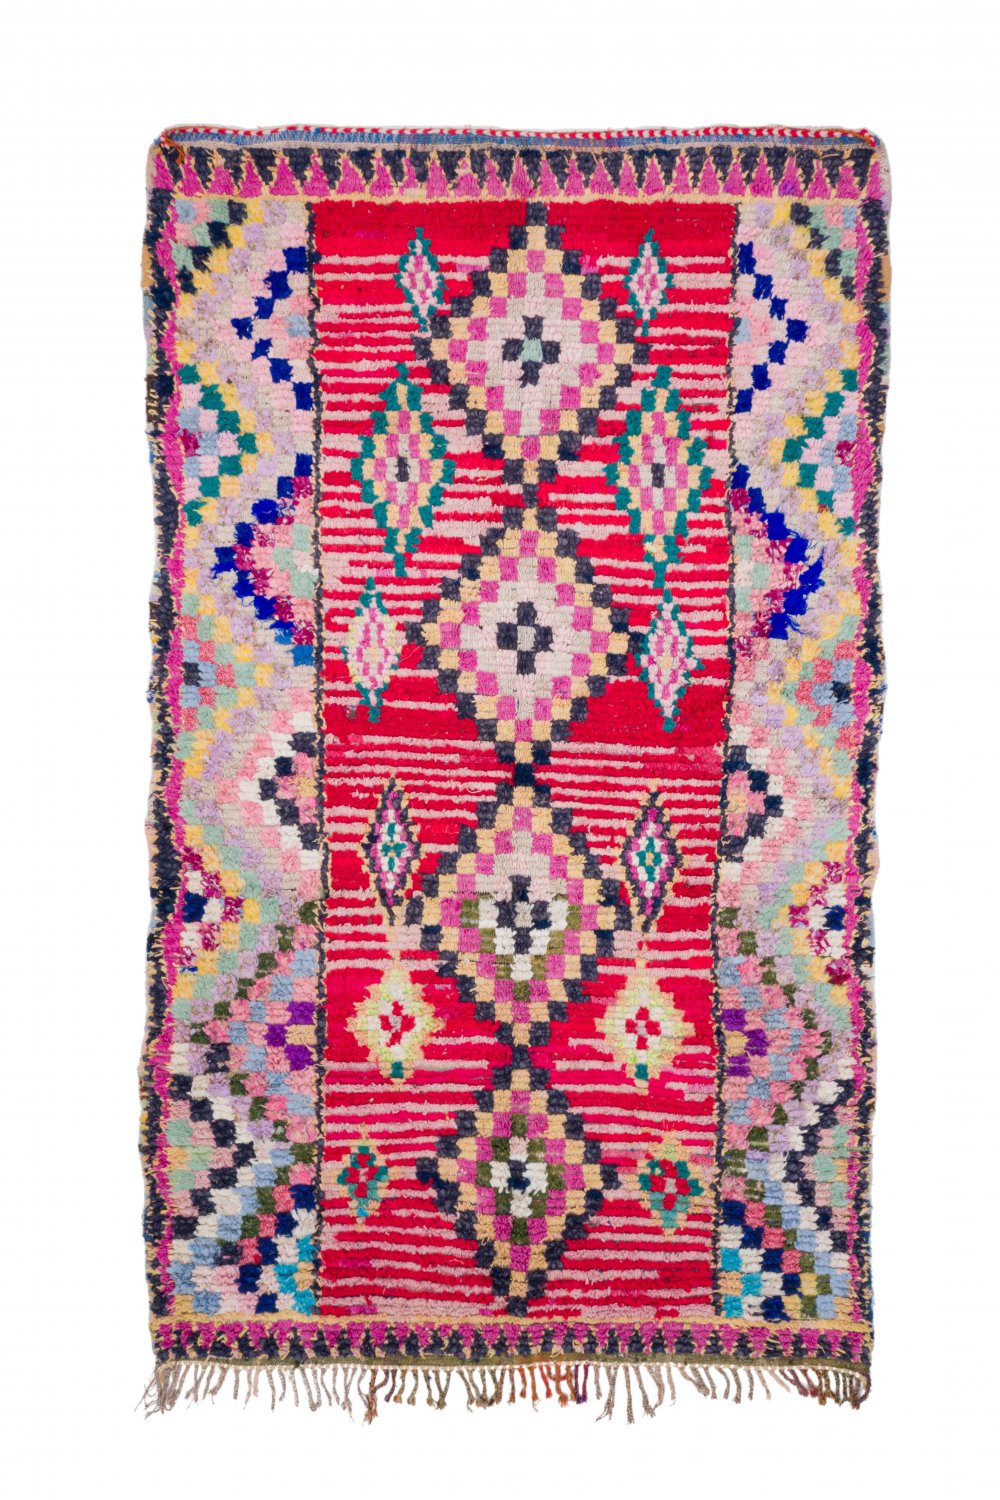 Patchwork Vintage Carpet 250 x 198 cm